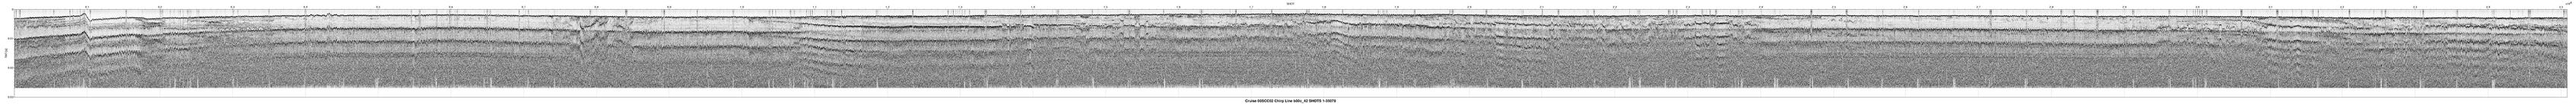 00SCC02 b00c_42 seismic profile image